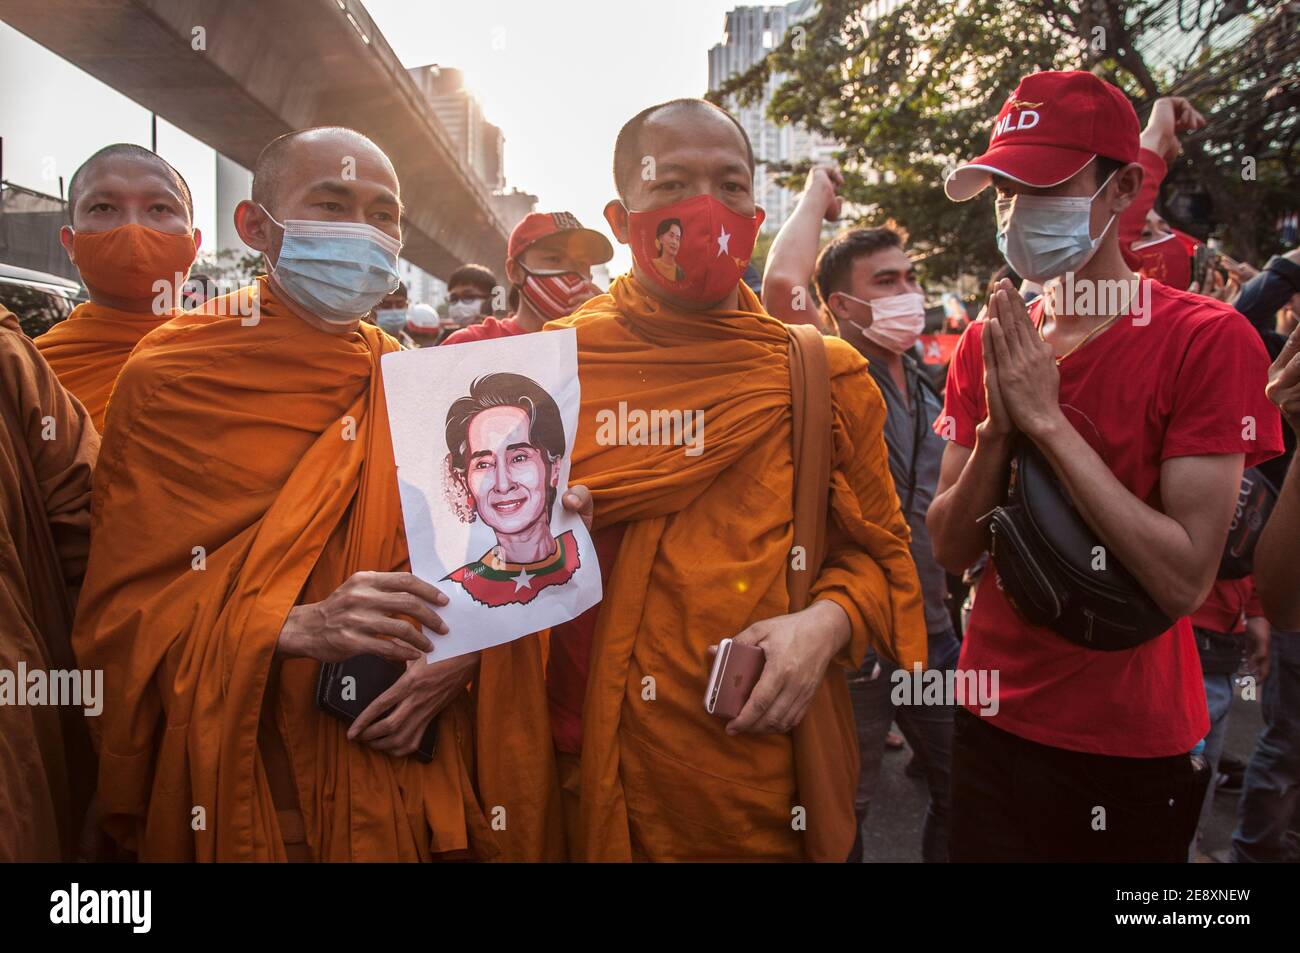 I monaci thailandesi che indossano maschere tengono un ritratto di Aung San Suu Kyi durante la dimostrazione. I sostenitori della Lega nazionale per la democrazia (NLD) e i manifestanti thailandesi anti-colpo si radunano fuori dall'ambasciata del Myanmar dopo che l'esercito del Myanmar ha preso il potere da un governo civile democraticamente eletto e ha arrestato il suo leader Aung San Suu Kyi. La polizia tailandese in rivolta ha poi disperso i dimostranti. Foto Stock